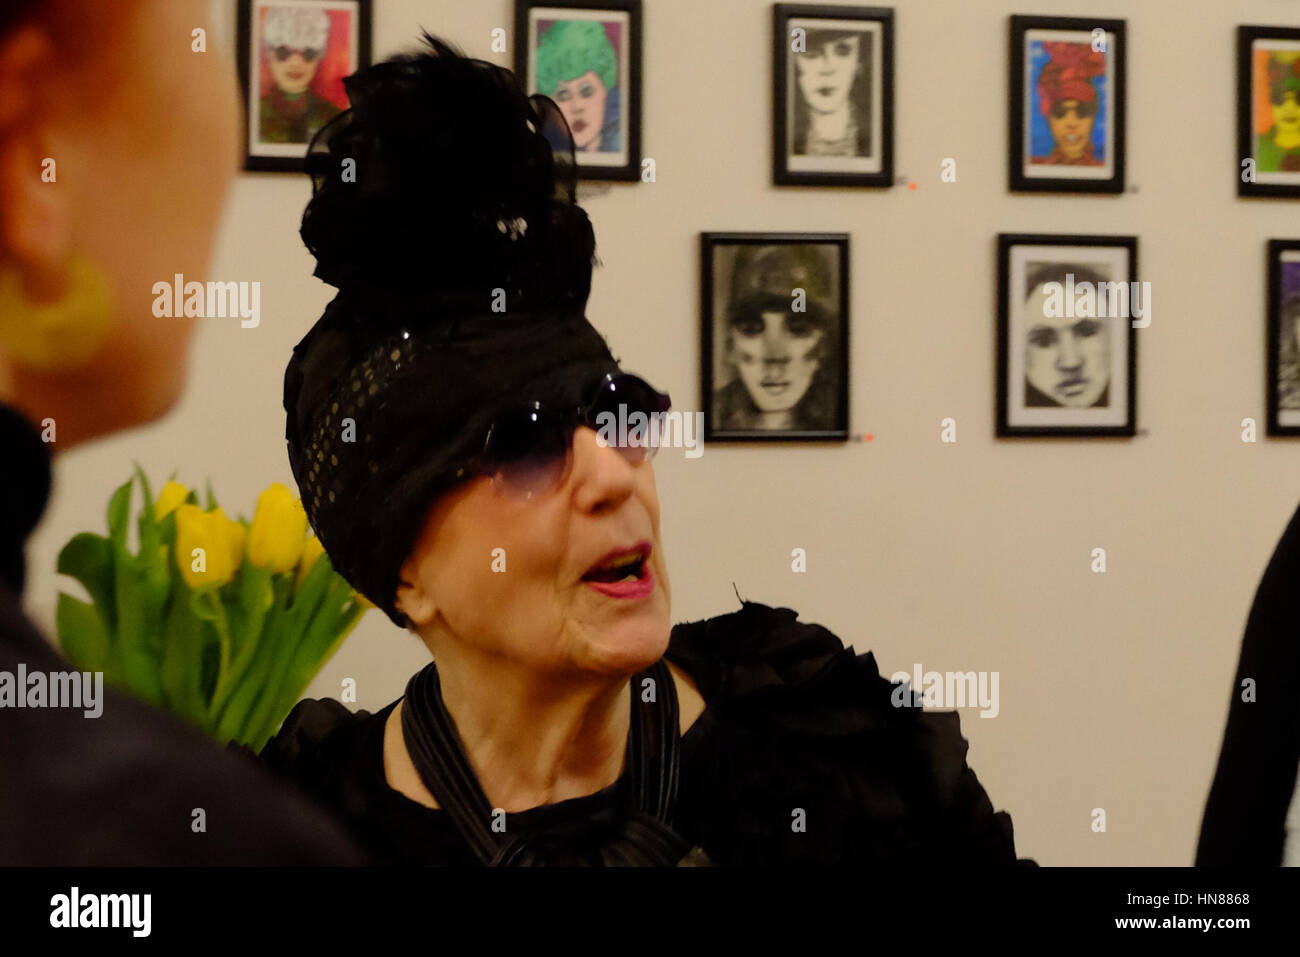 Londra, Regno Unito. Il 9 febbraio, 2017. Molly Parkin, famoso artista gallese , giornalista e autore, tiene una mostra di suoi dipinti a Vout-o-reenees galleria sul suo ottantacinquesimo compleanno Credito: Londonphotos/Alamy Live News Foto Stock